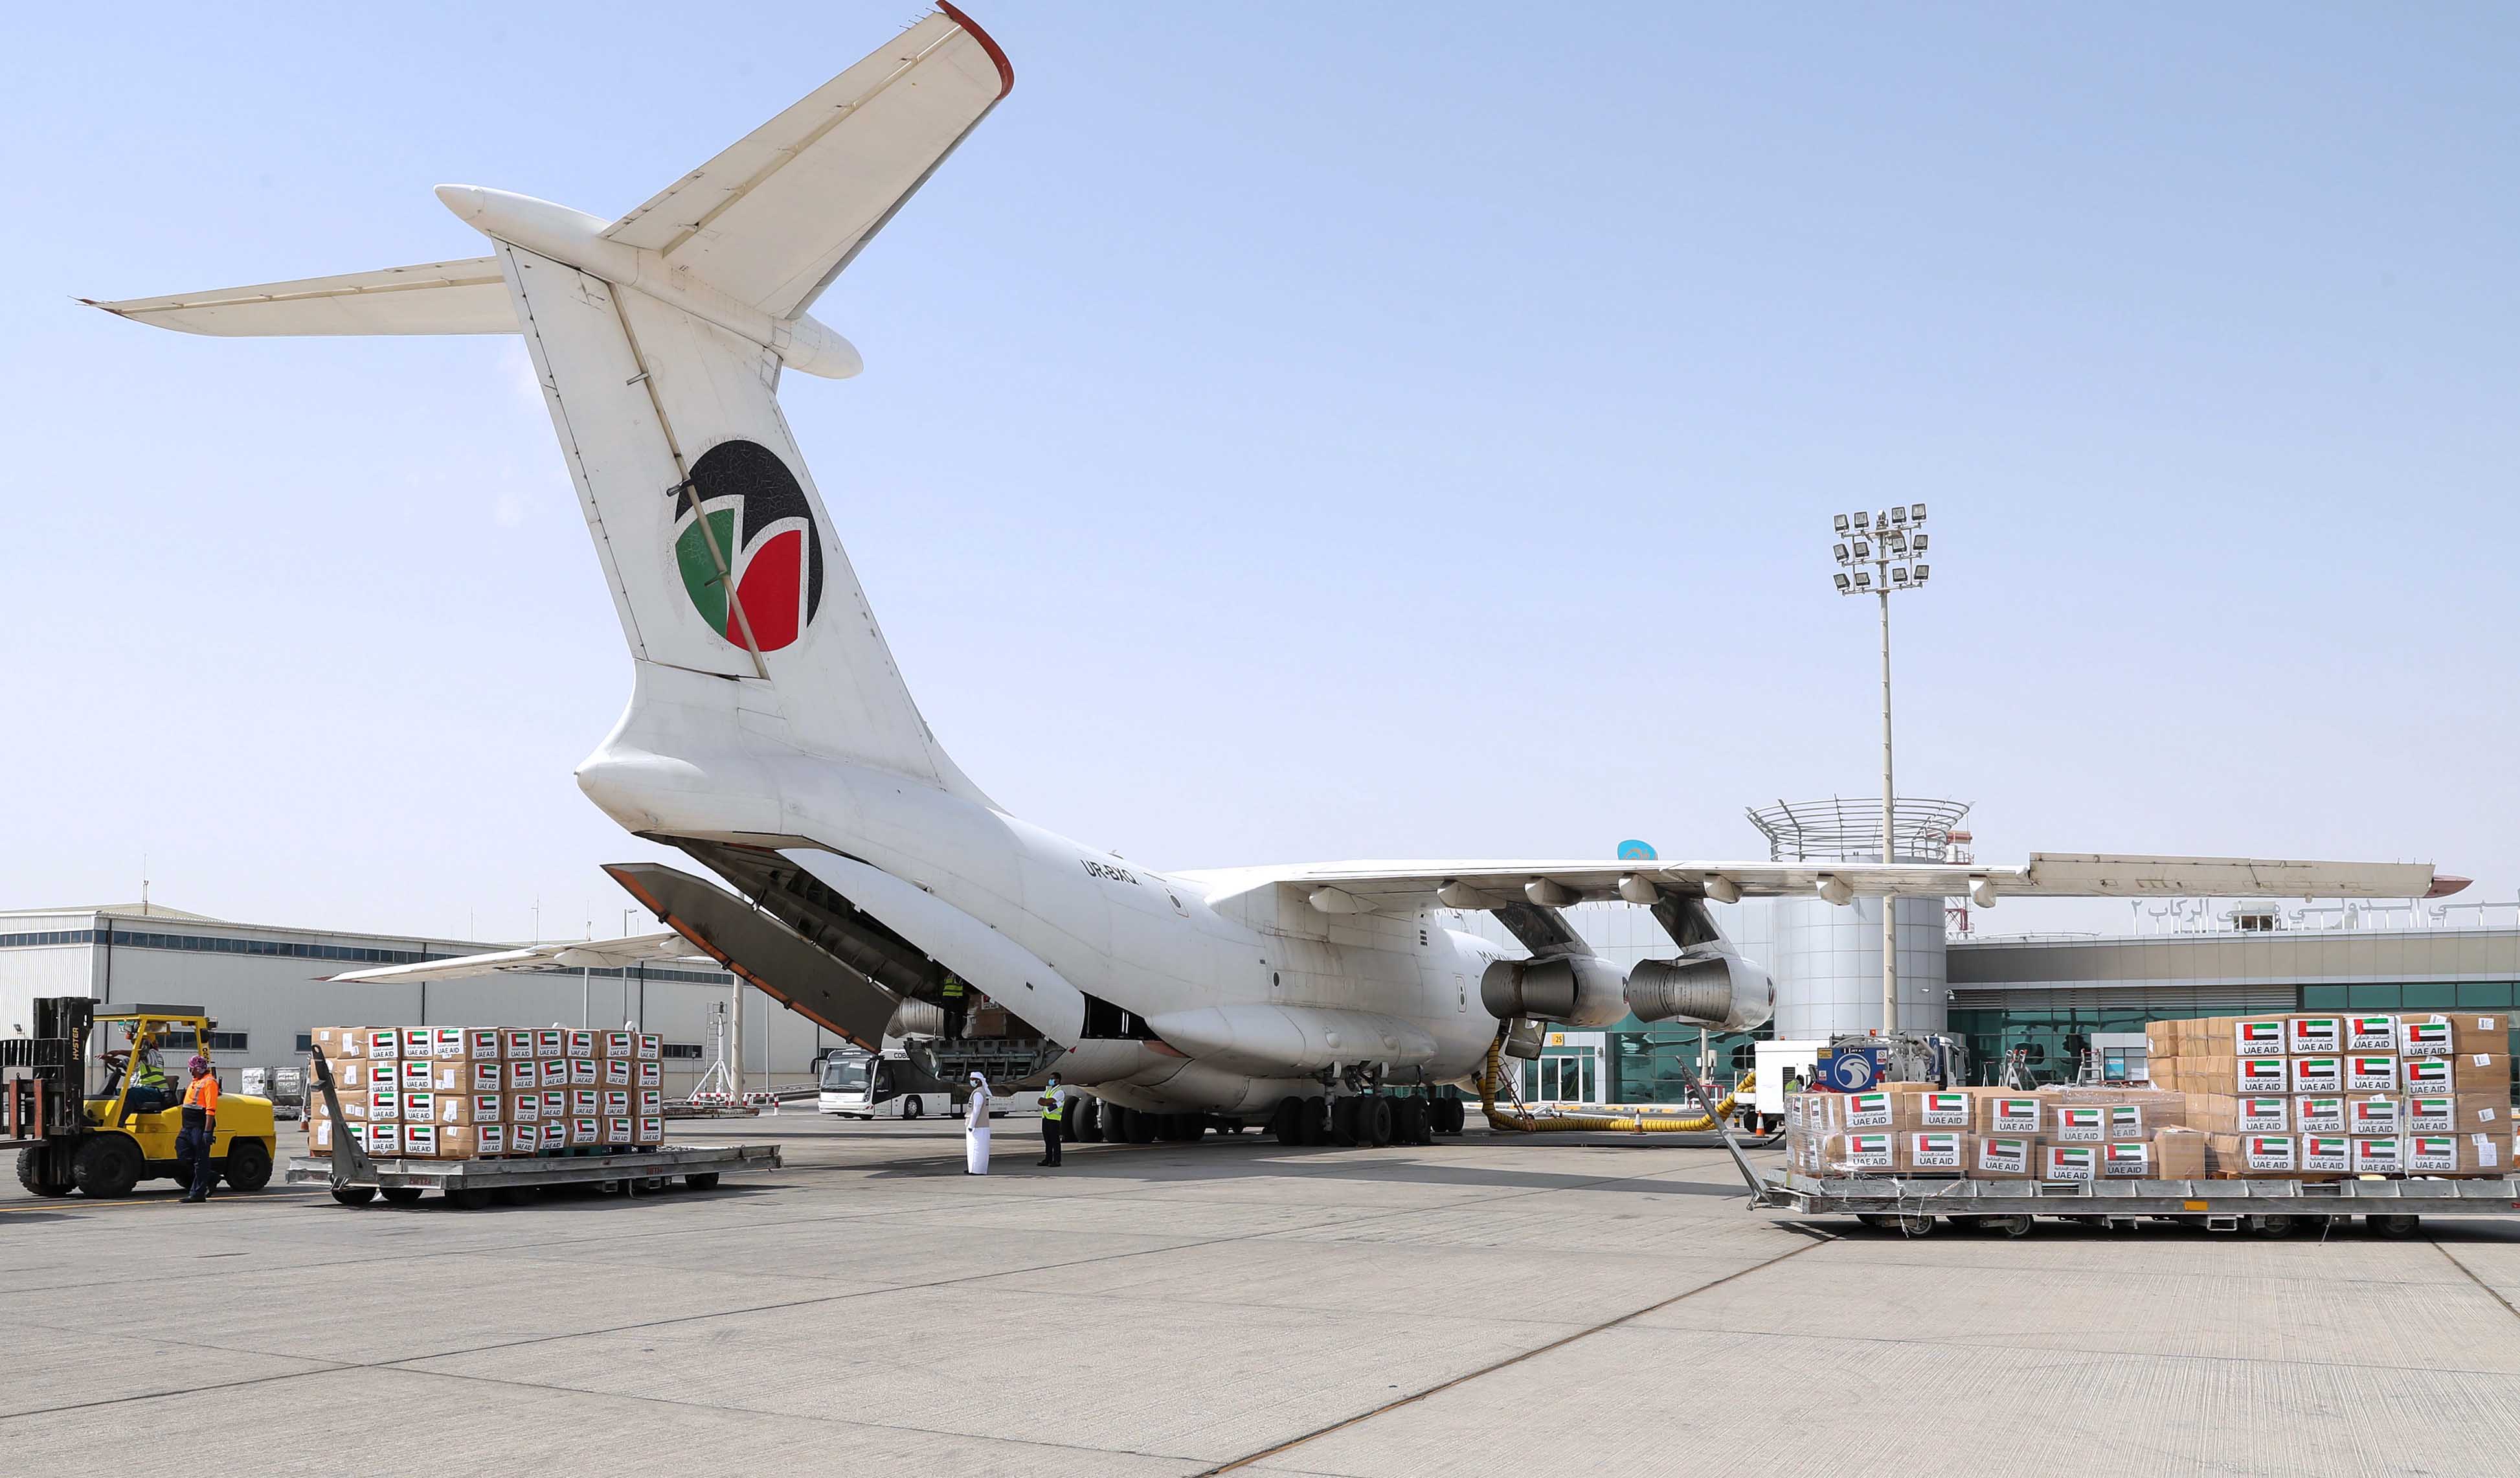 يأتي إرسال طائرة المساعدات الطبية الإضافية استمراراً للدعم الذي تقدّمه دولة الإمارات لجمهورية العراق الشقيقة